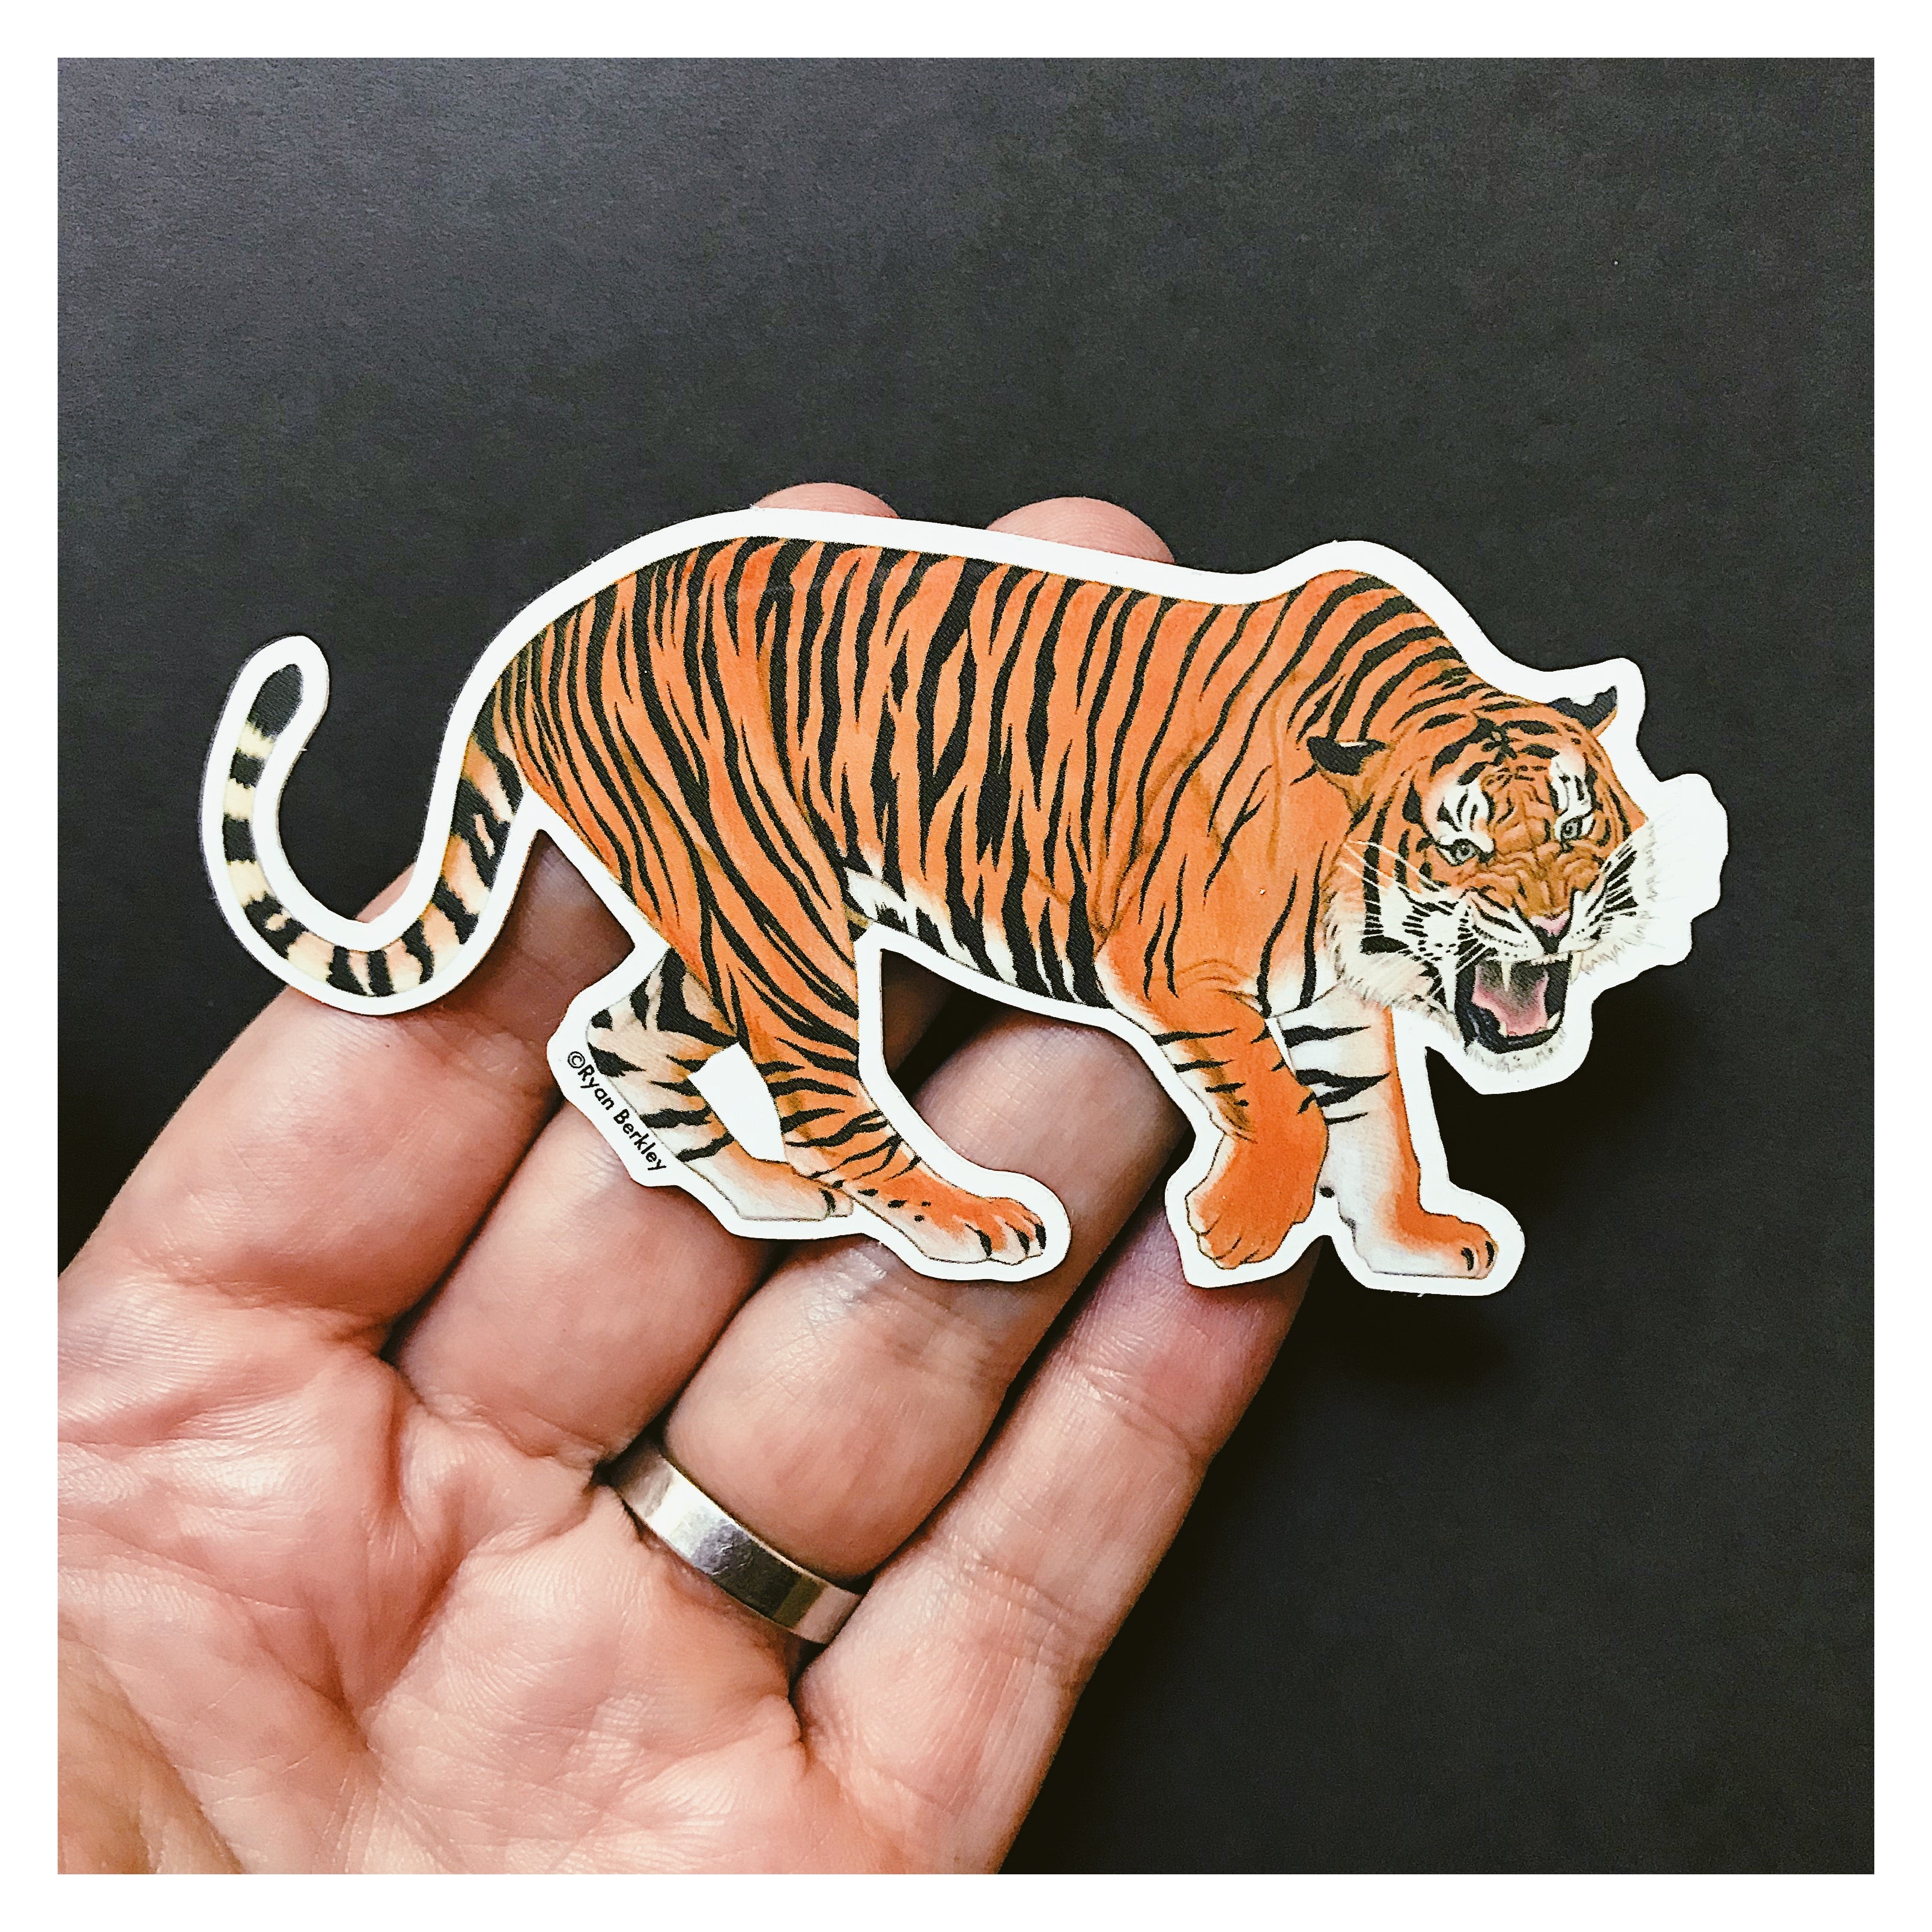 Vinyl Sticker - Tiger